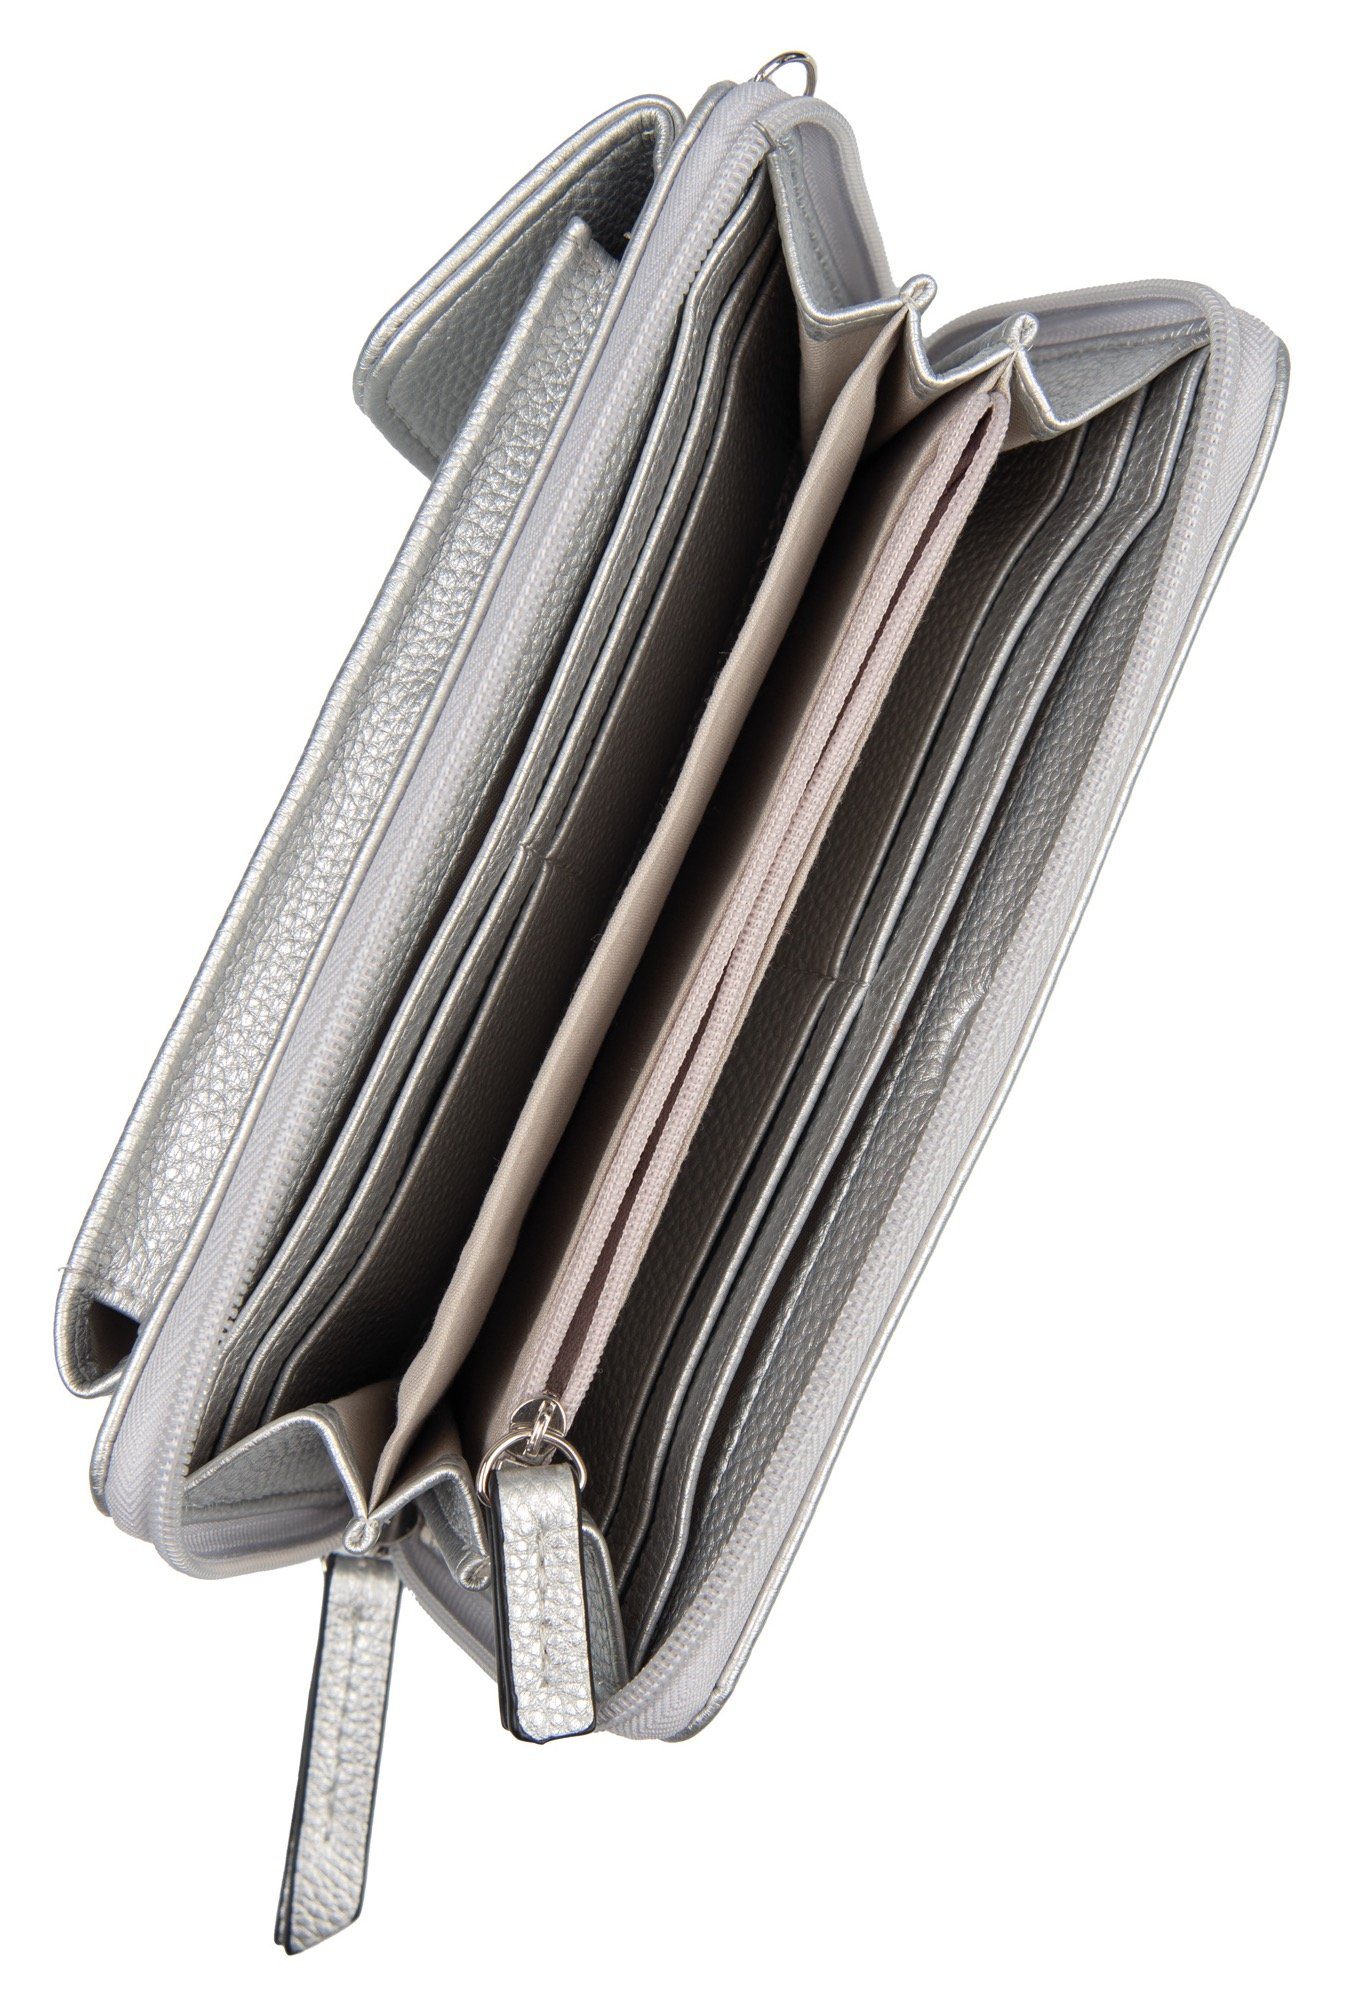 Außenfach Geldbörse silberfarben mit geräumigem zip TOM wallet Long ELA XL, TAILOR